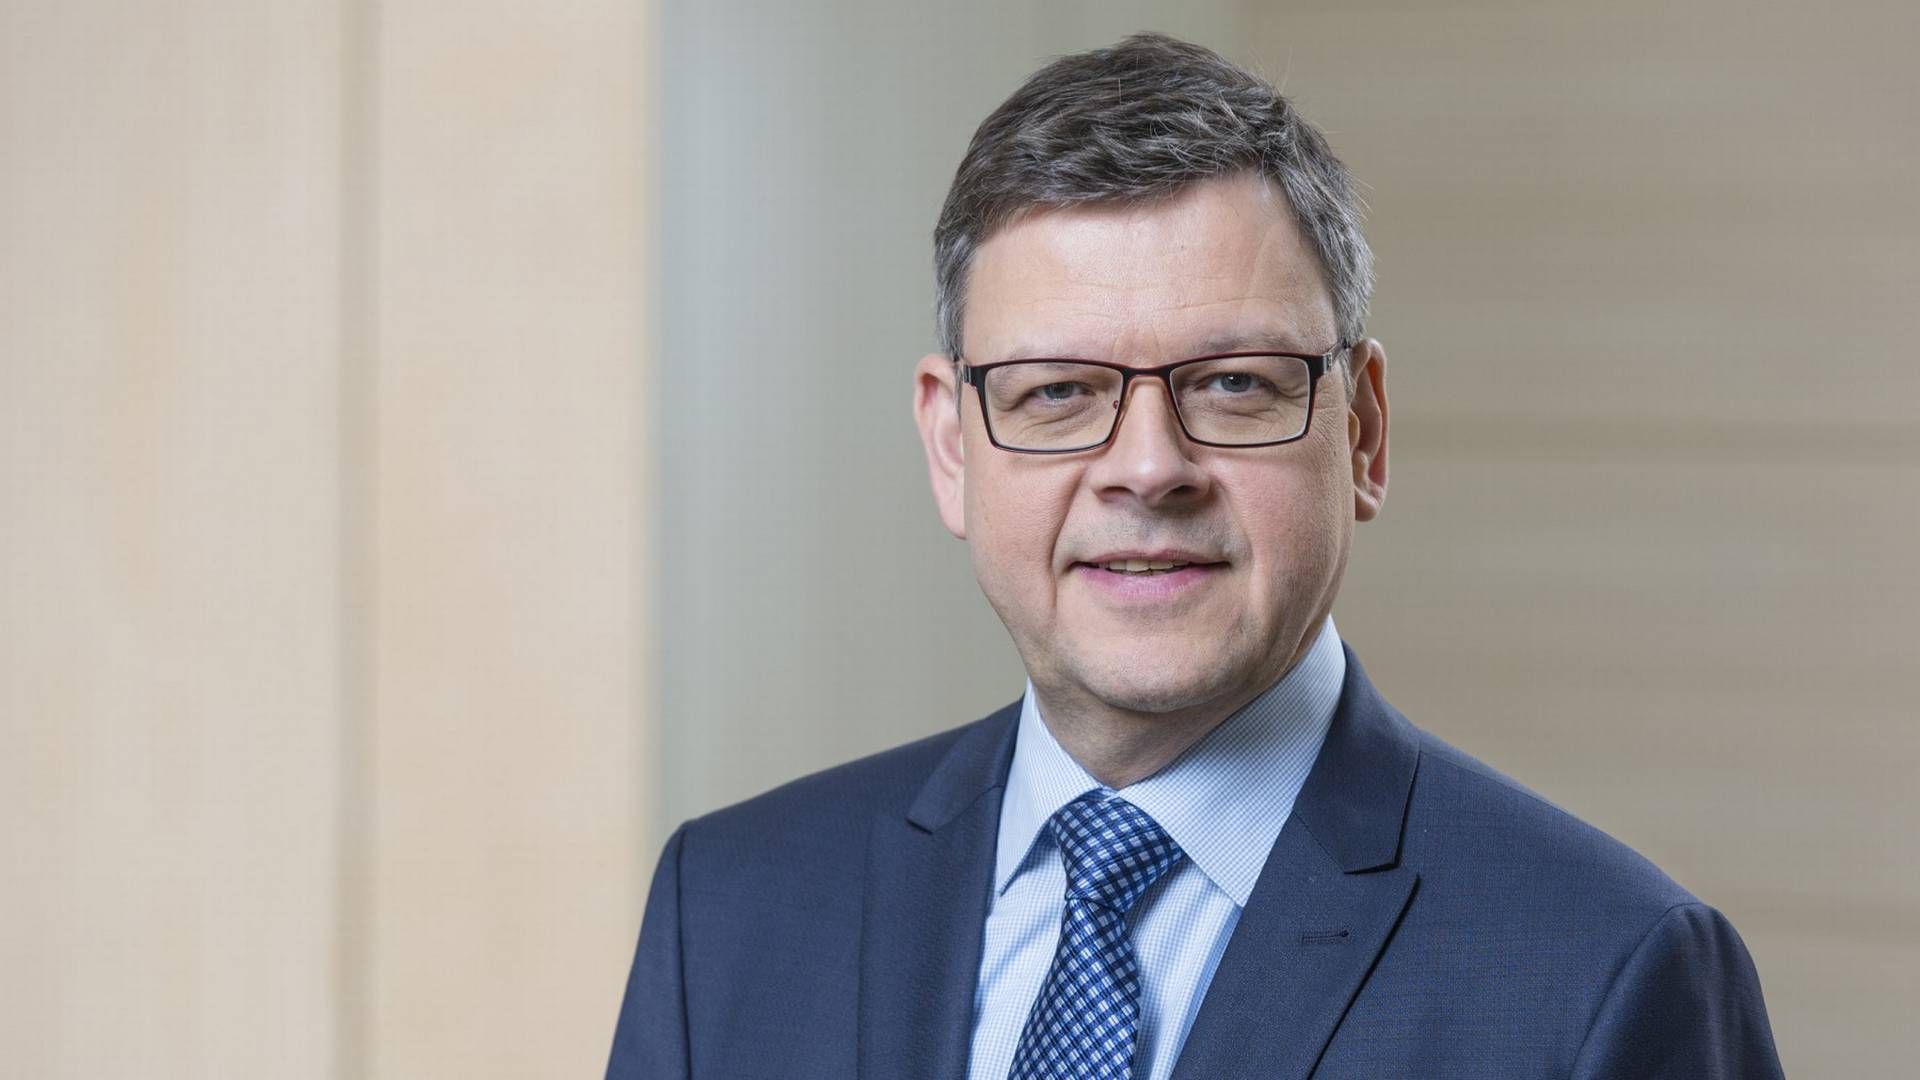 Thorsten Pötzsch, Exekutivdirektor Abwicklung der BaFin | Foto: Bernd Roselieb / BaFin